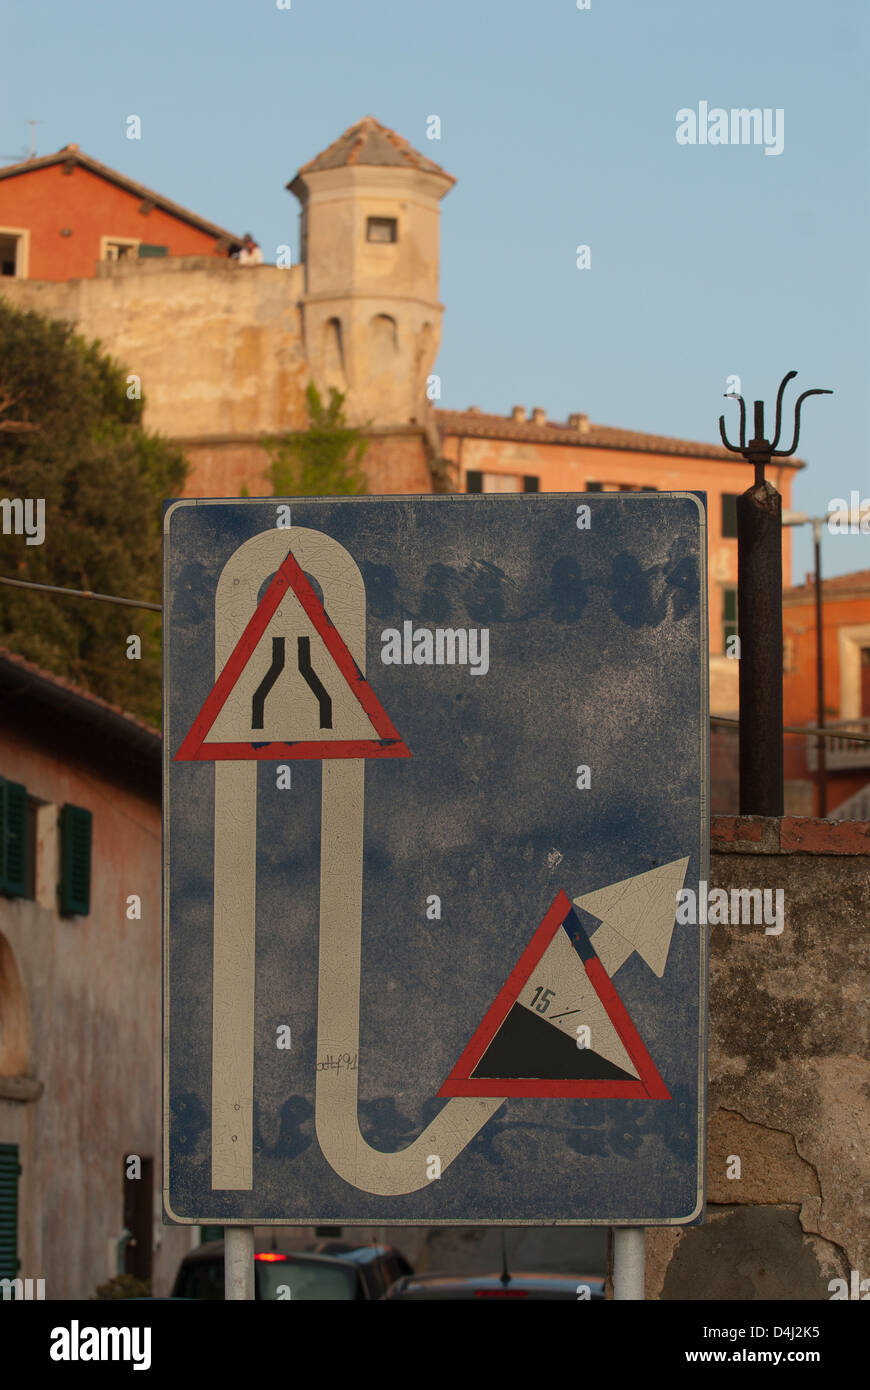 Portoferraio, Italia, una señal de tráfico que indica las difíciles condiciones de las carreteras Foto de stock